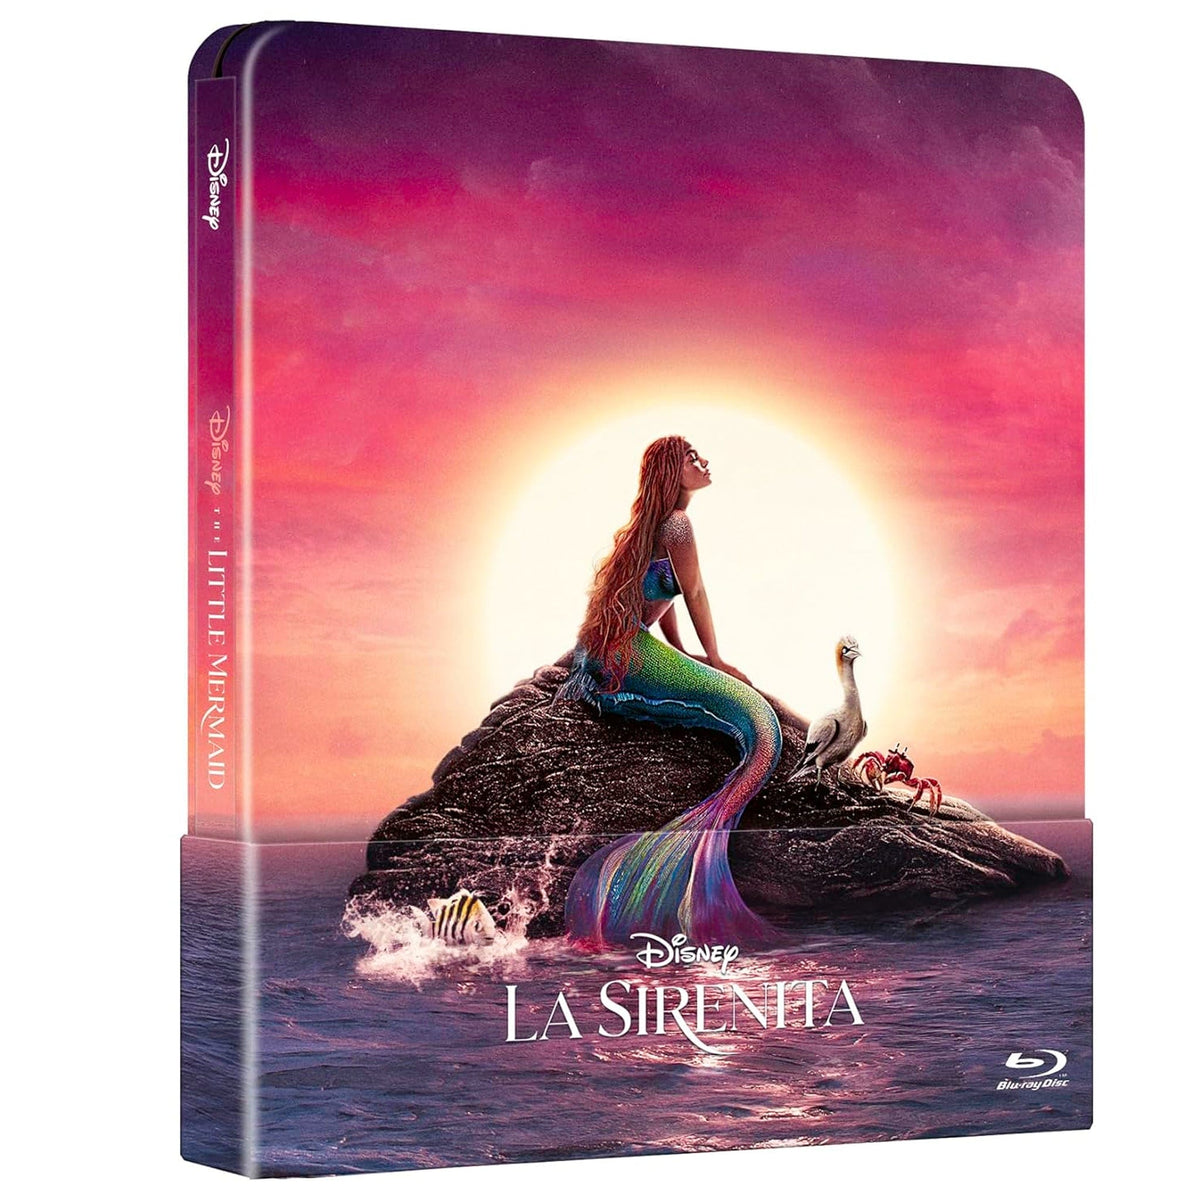 
  
  La Sirenita (Image Real) Steelbook Blu-Ray
  
